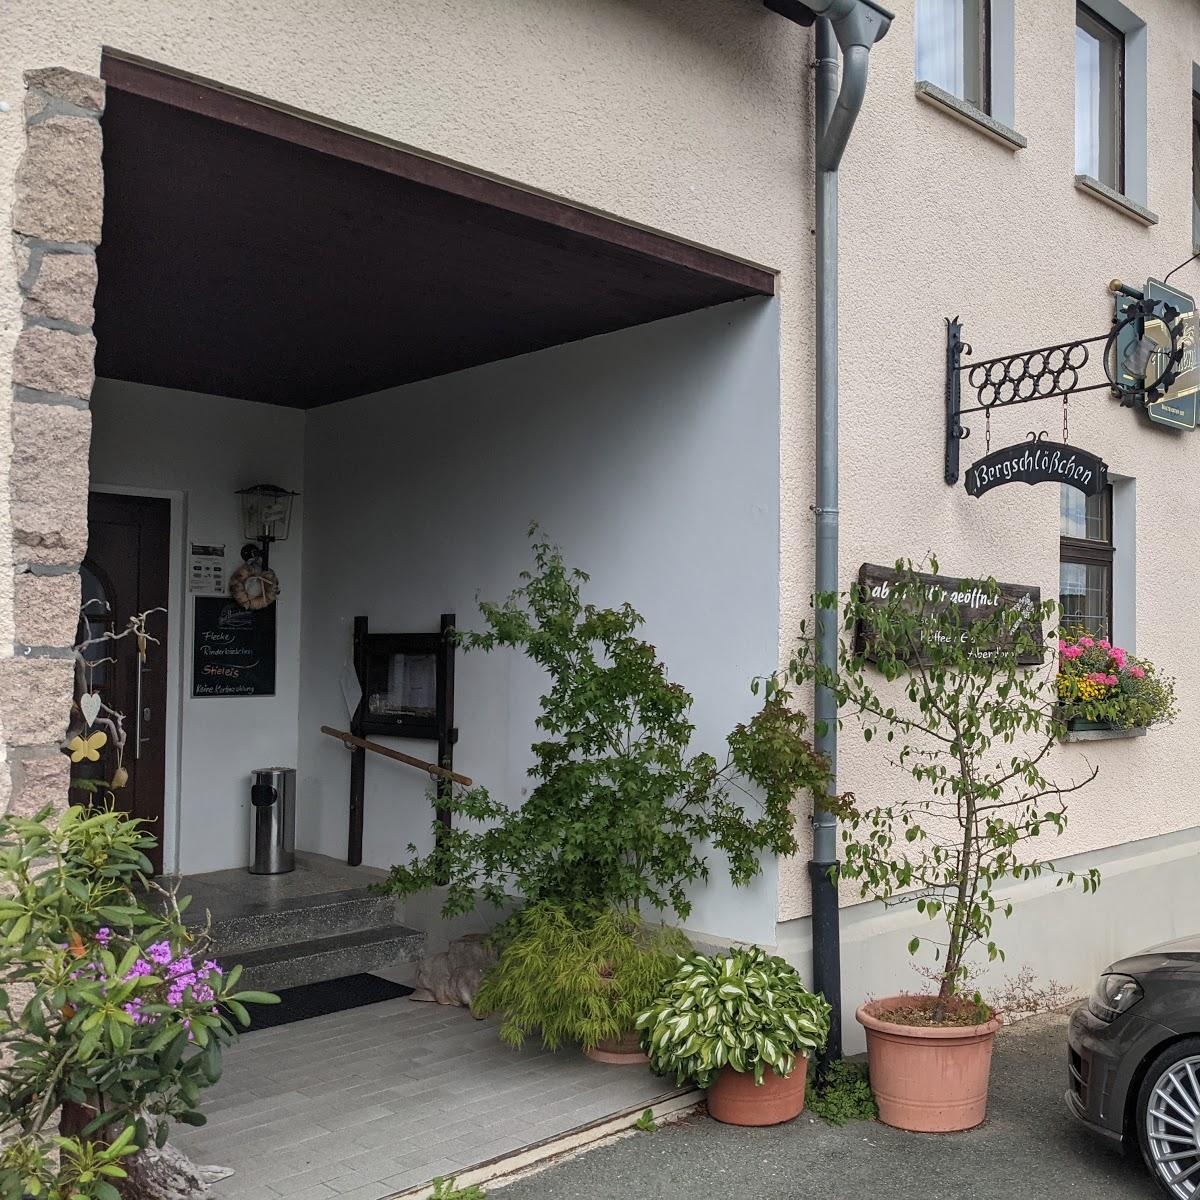 Restaurant "Gaststätte Bergschlößchen Muldenberg" in Grünbach